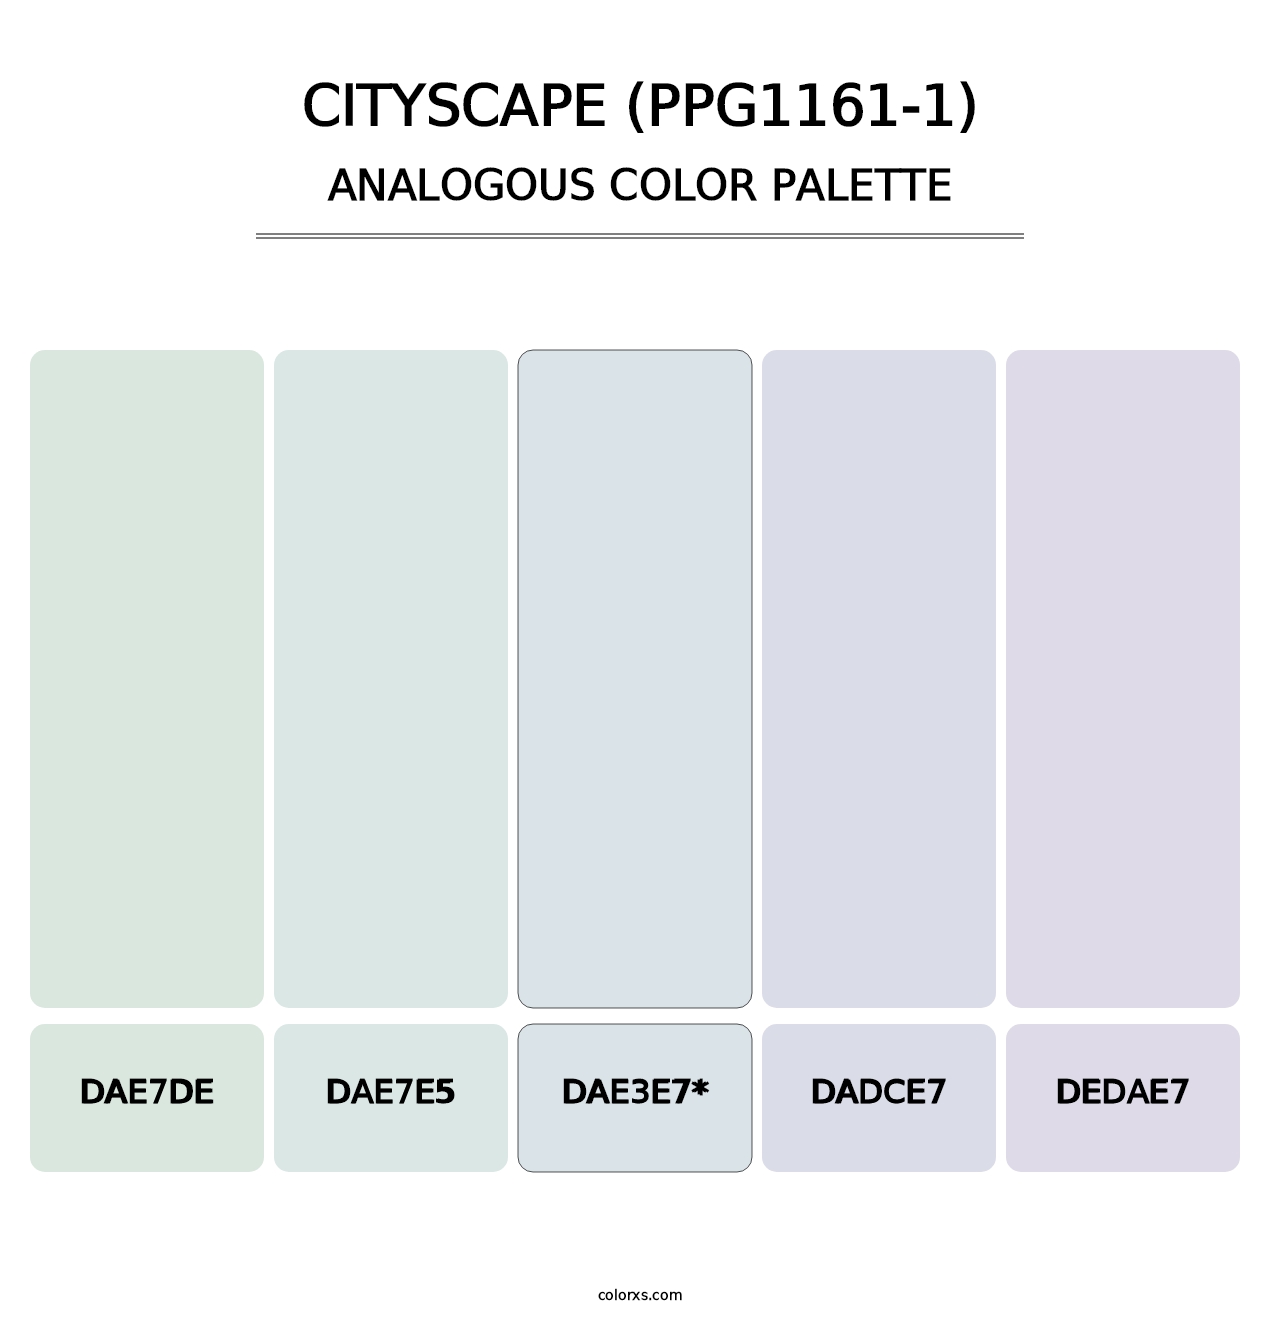 Cityscape (PPG1161-1) - Analogous Color Palette